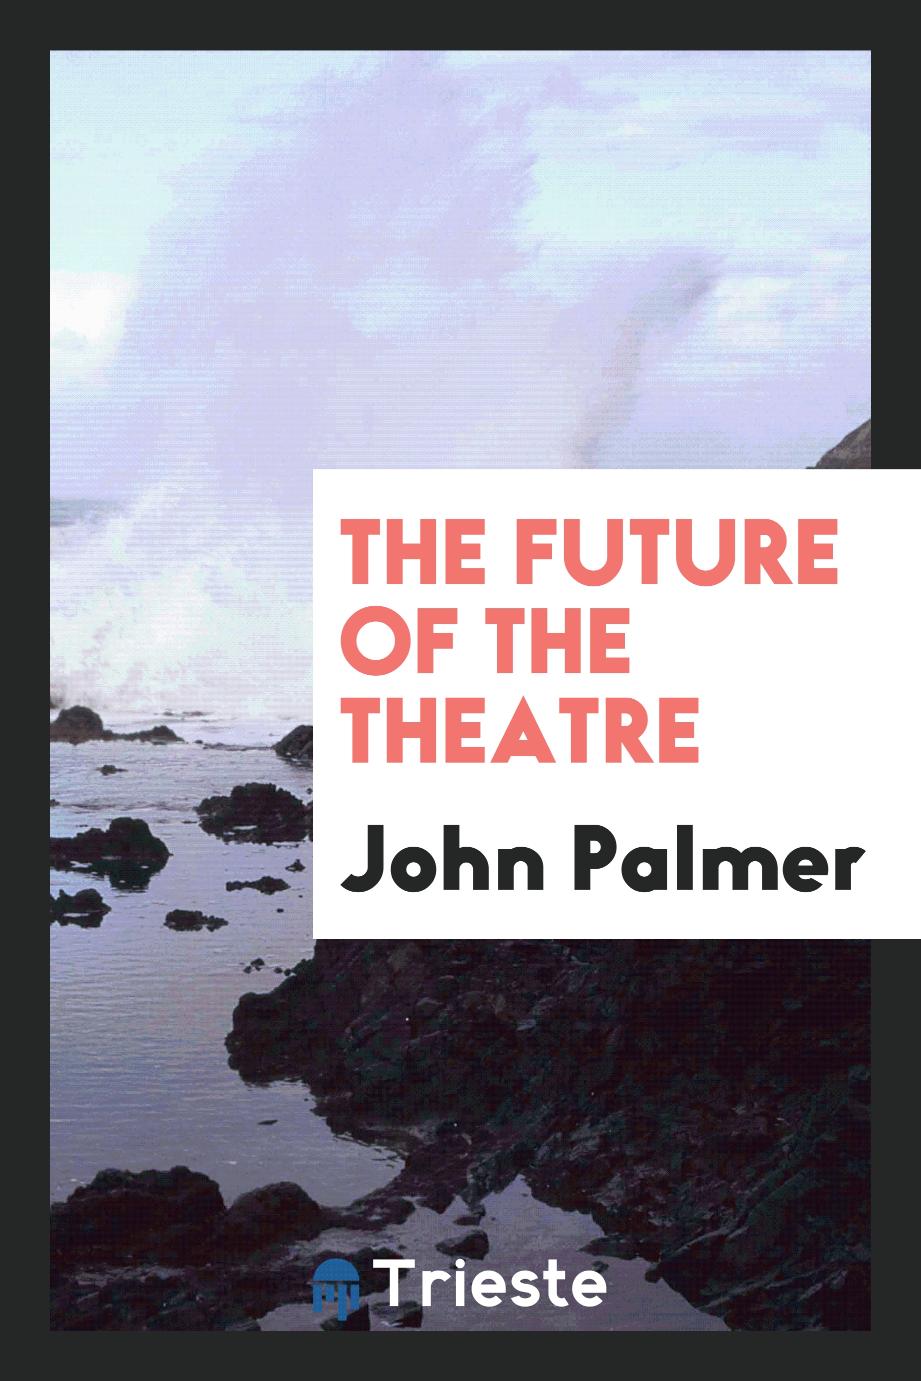 The future of the theatre